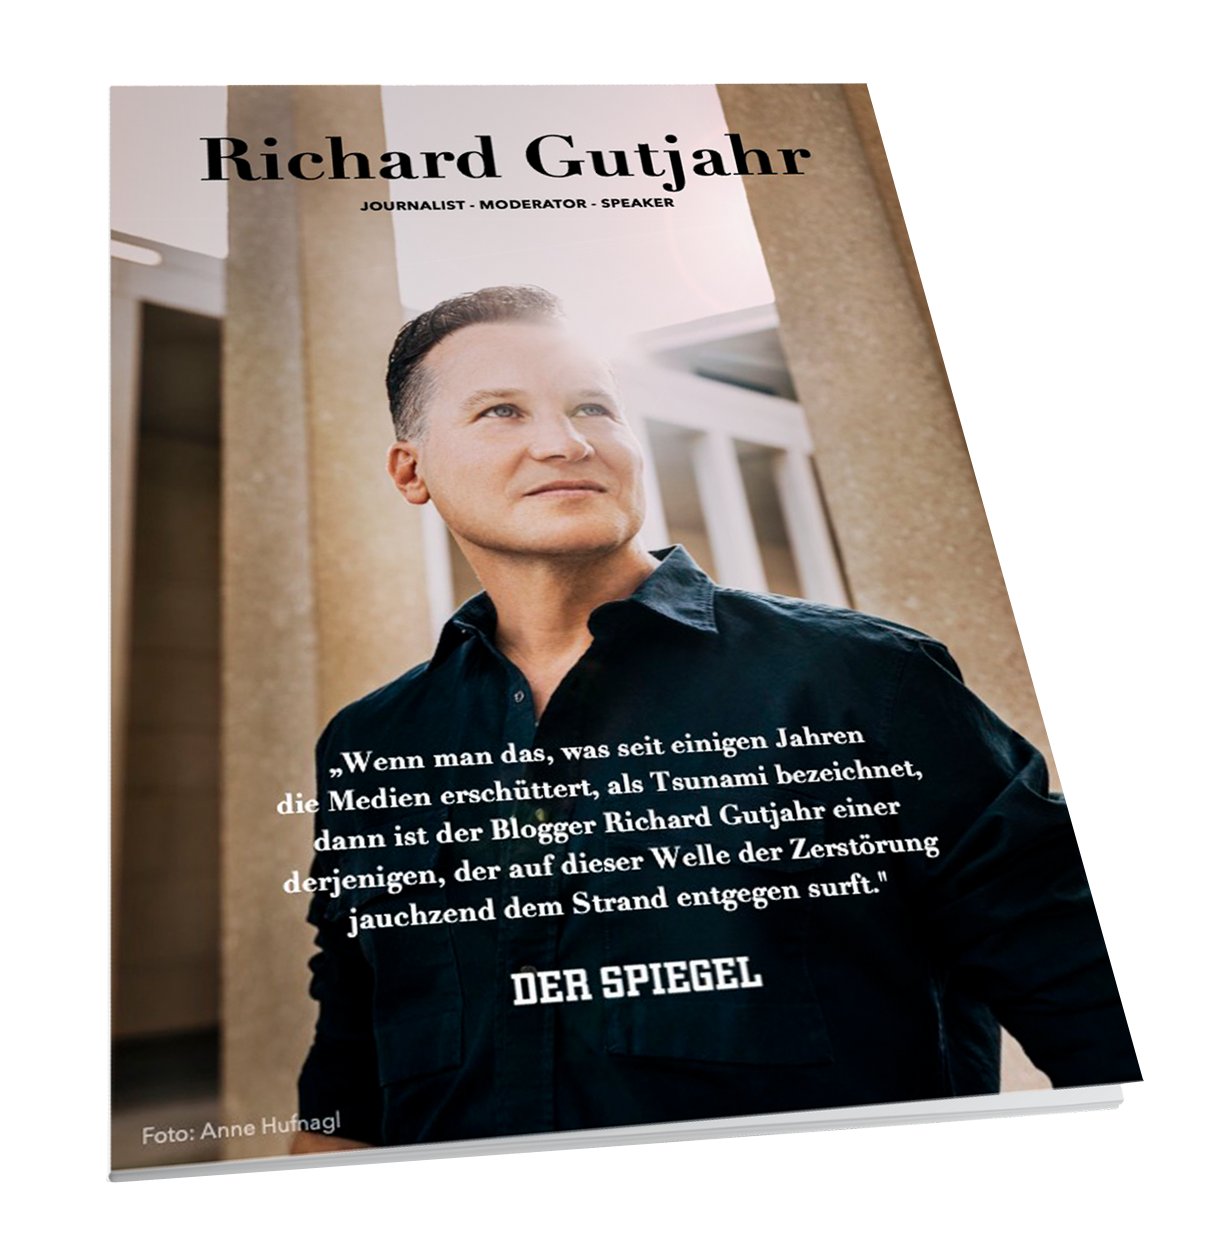 Flyer mit Richard Gutjahr auf dem Cover